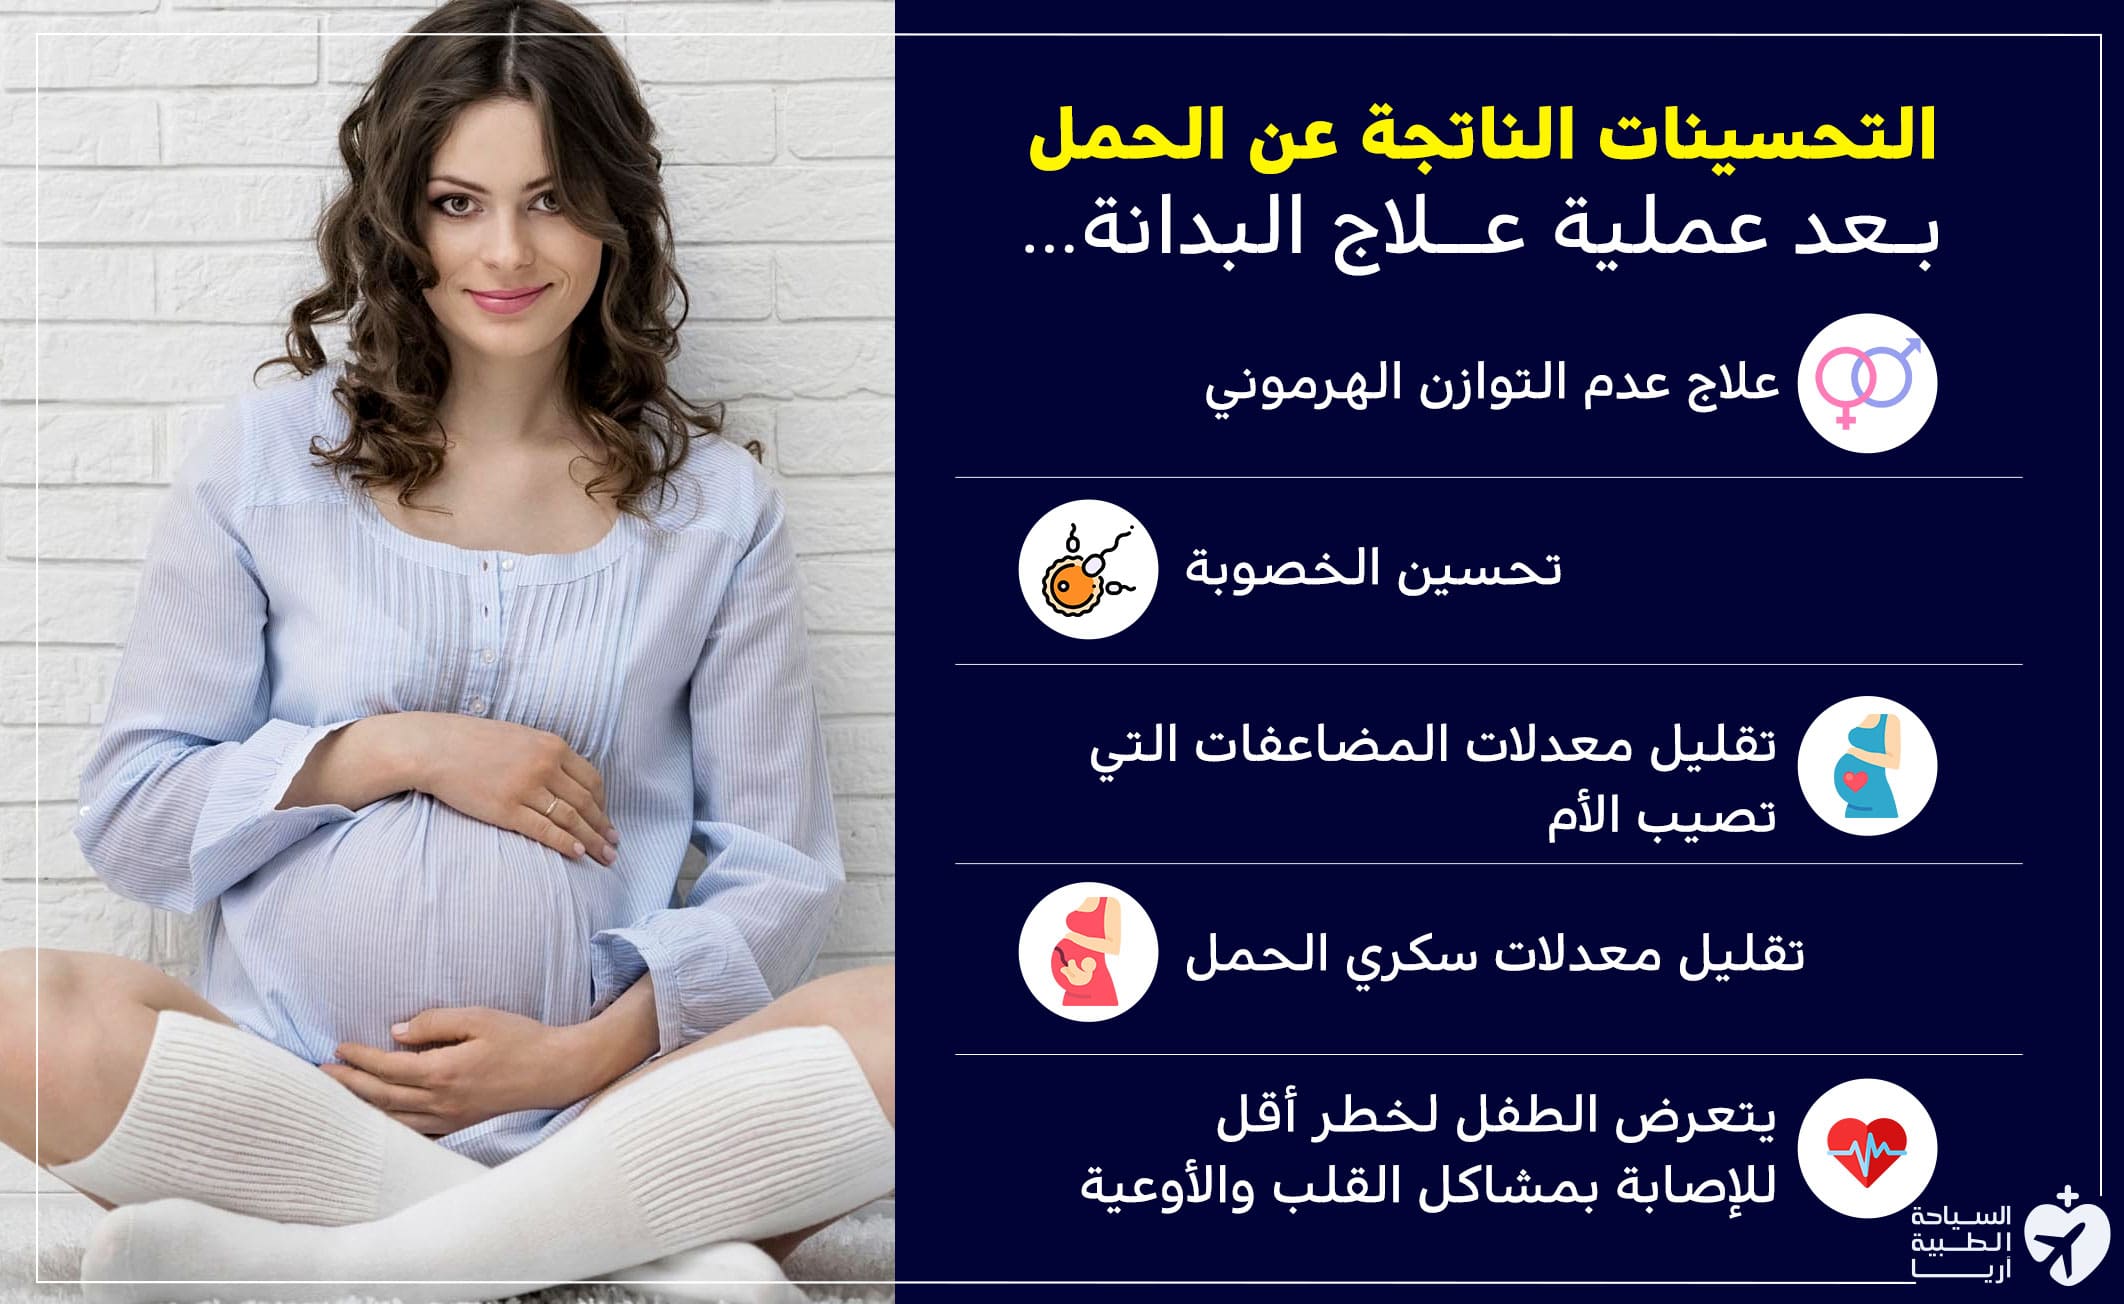 فوائد الحمل بعد عملية انقاص الوزن